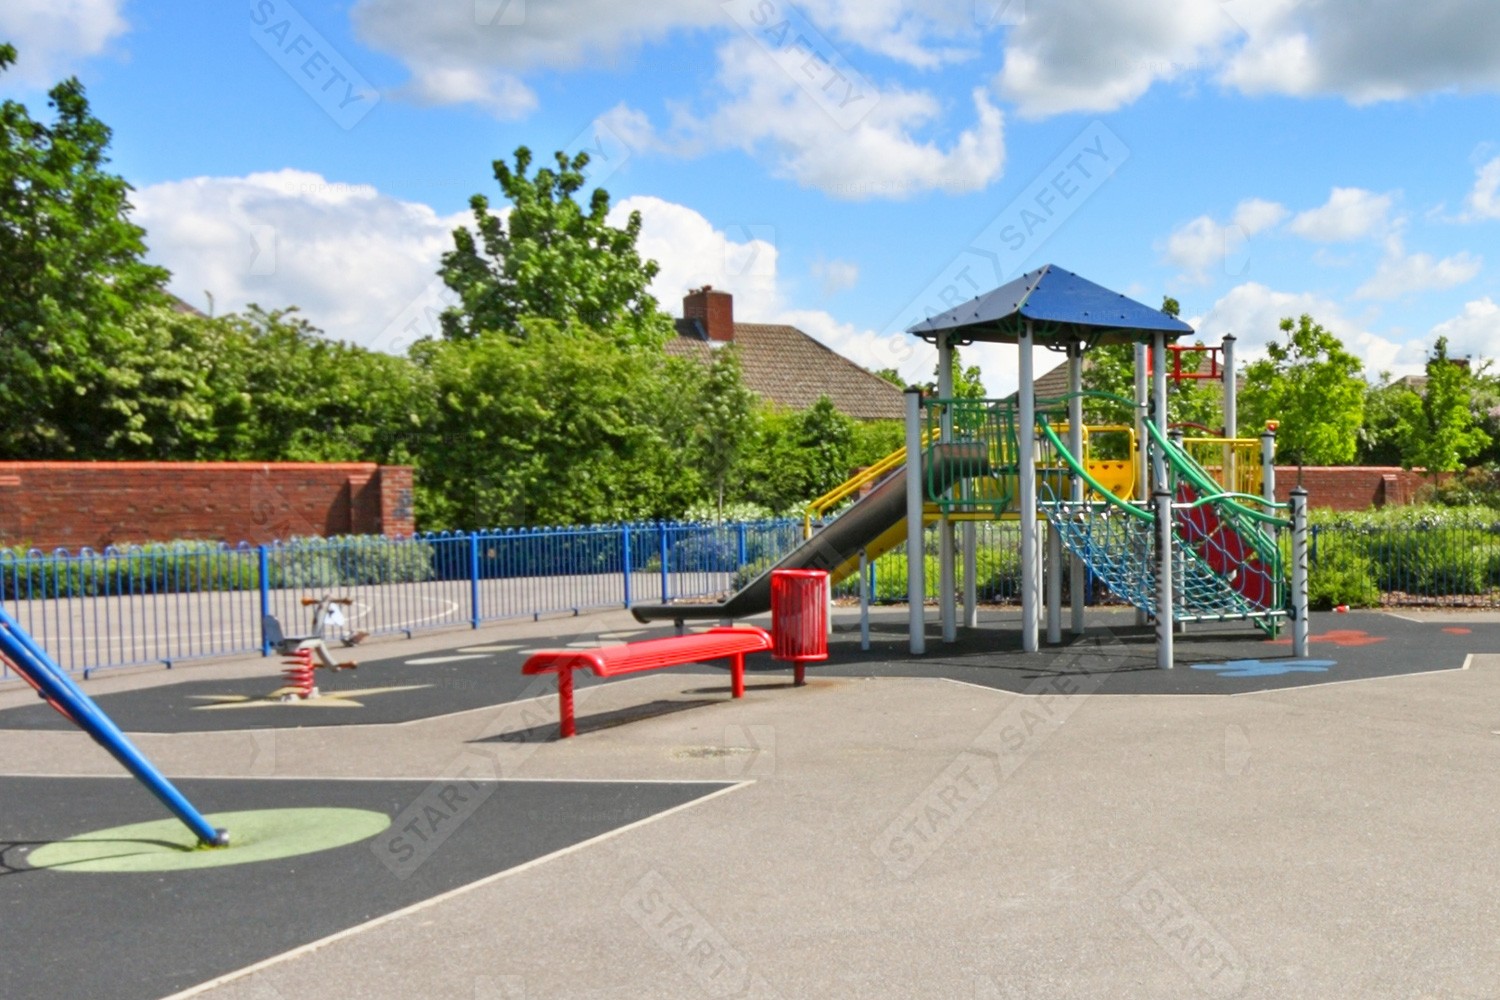 Playground With Junior Street Furniture For children